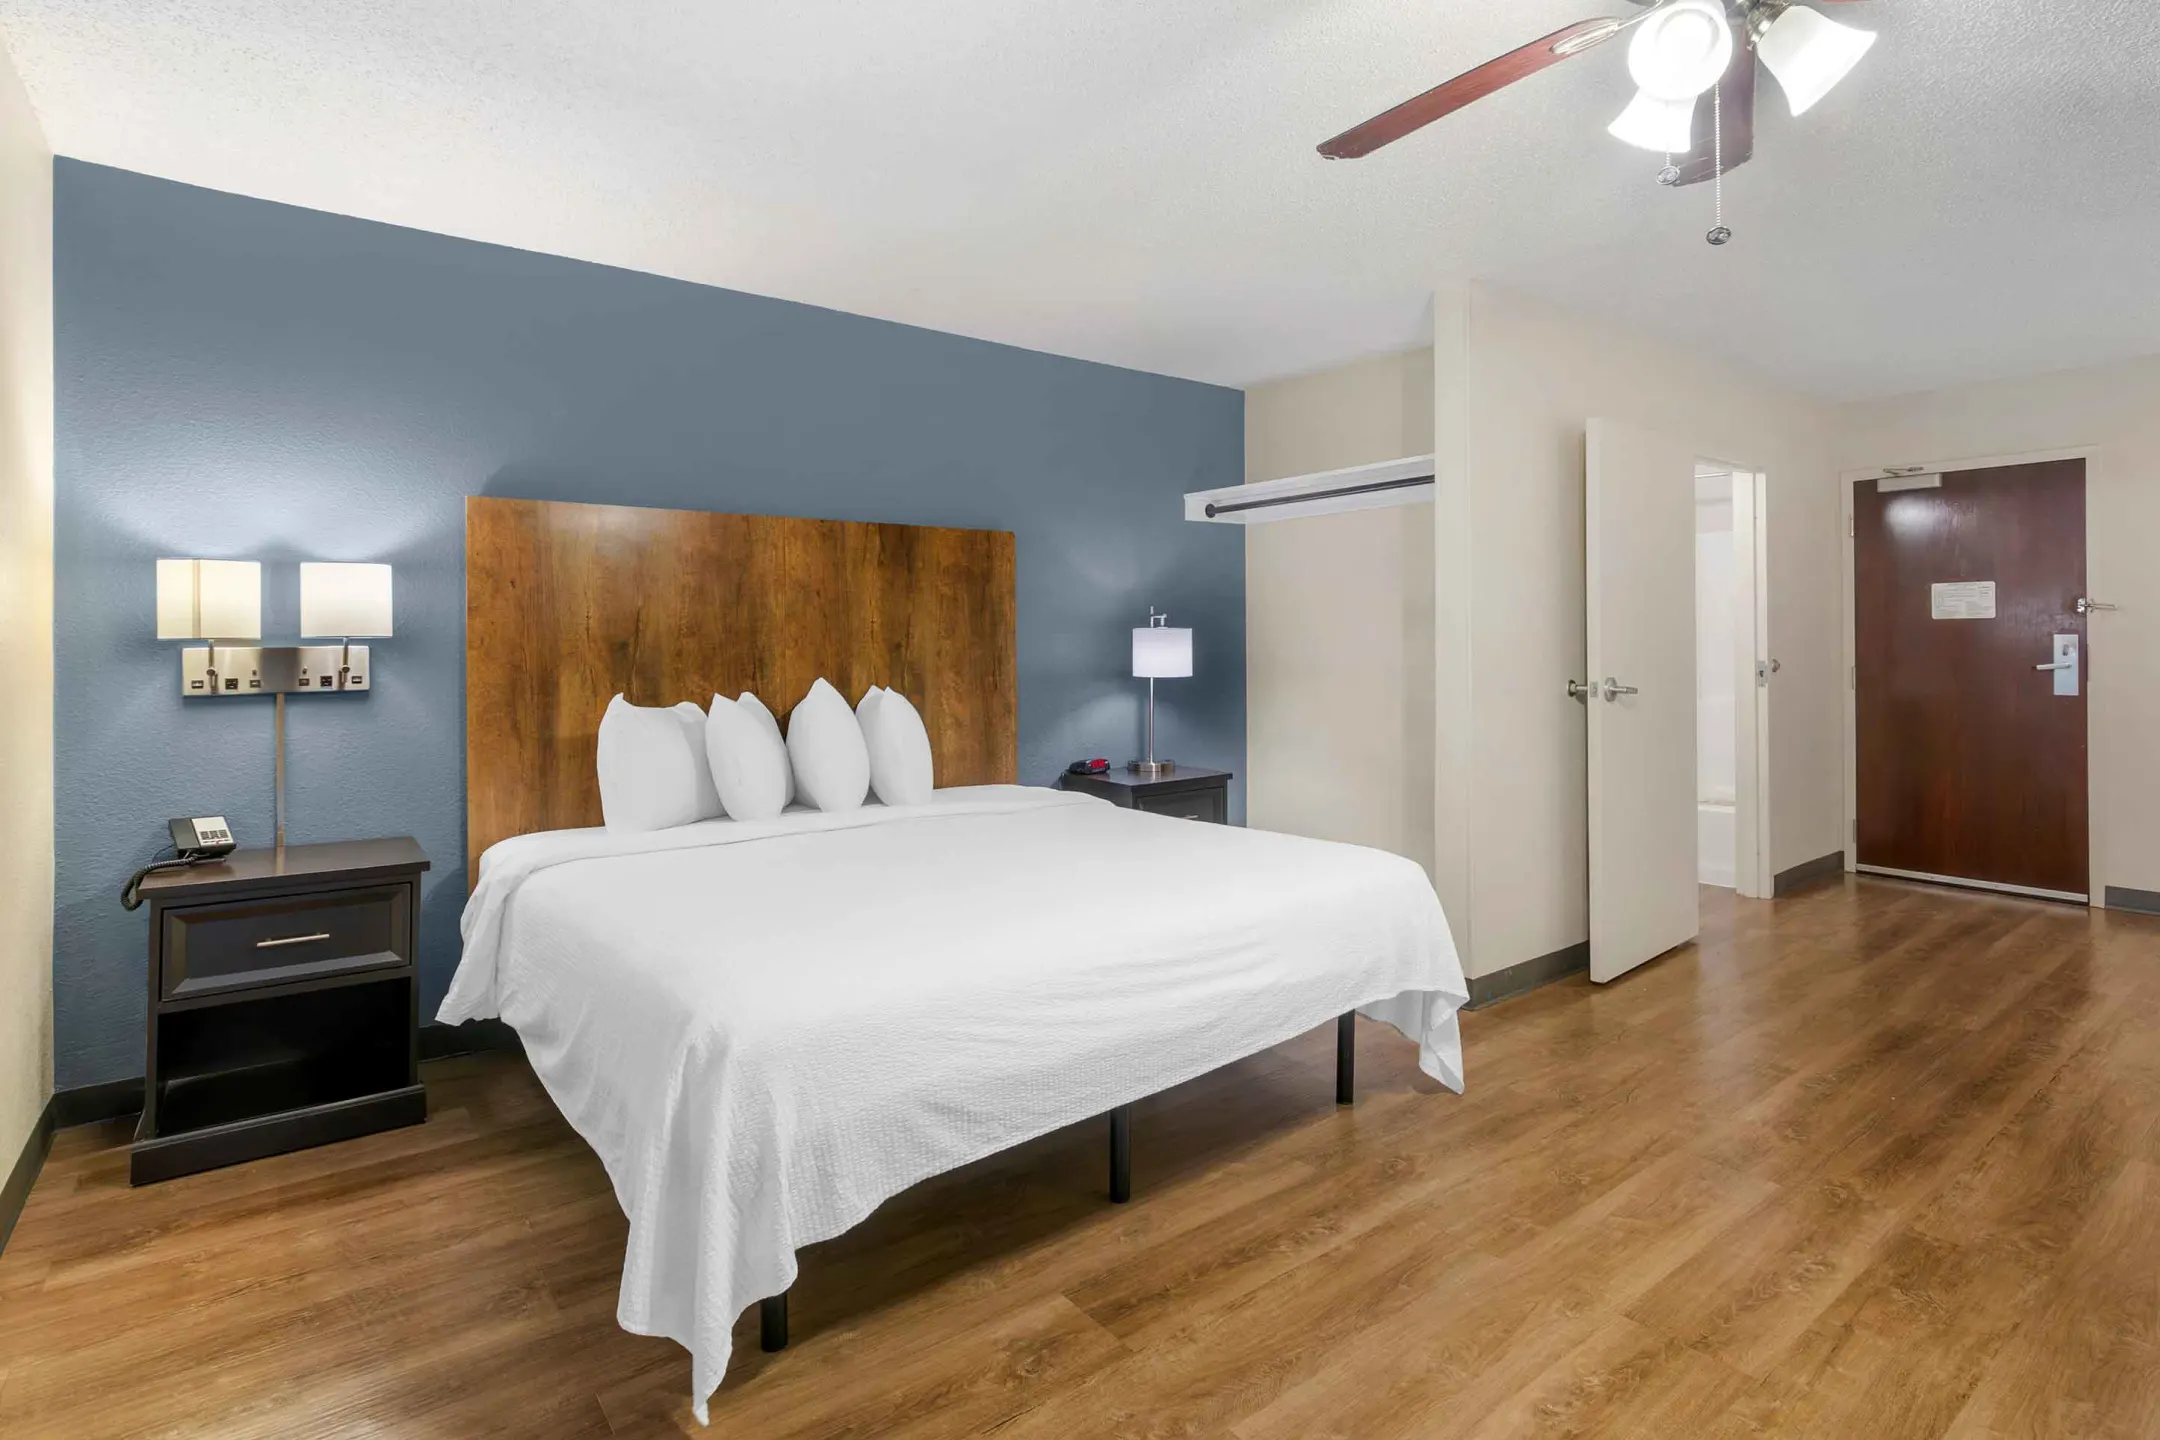 Bedroom - Furnished Studio - Fort Lauderdale - Convention Center - Cruise Port - Fort Lauderdale, FL